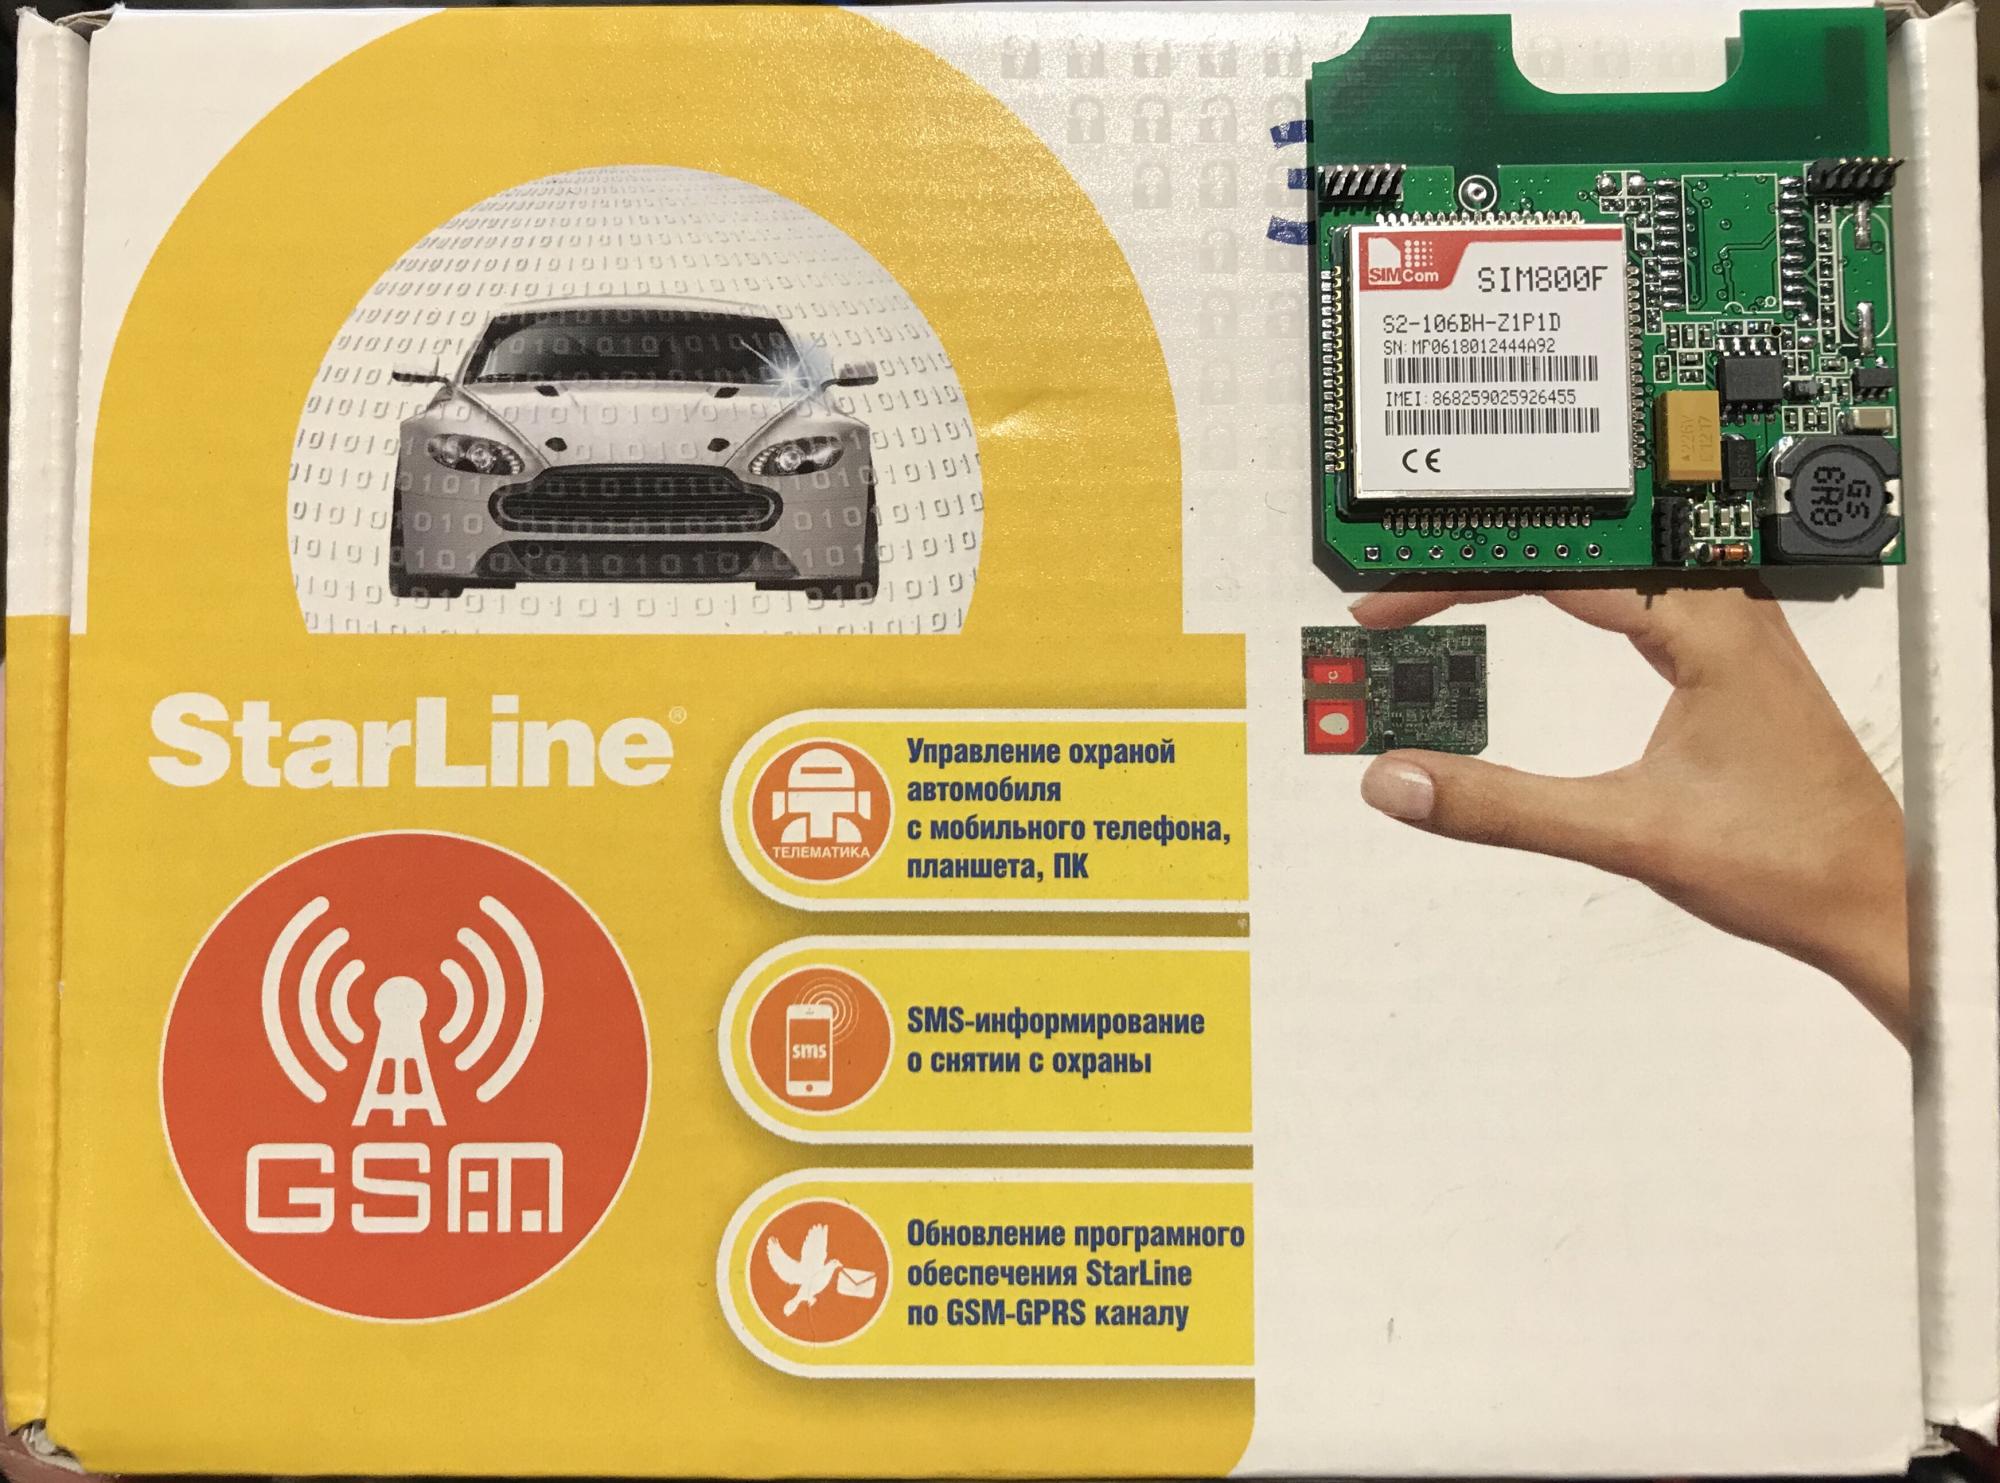 Starline gsm цена. Модуль GSM-GPS STARLINE мастер 5. Старлайн а93 GSM модуль. Телематика STARLINE а93. GSM модуль для STARLINE a93 v2.